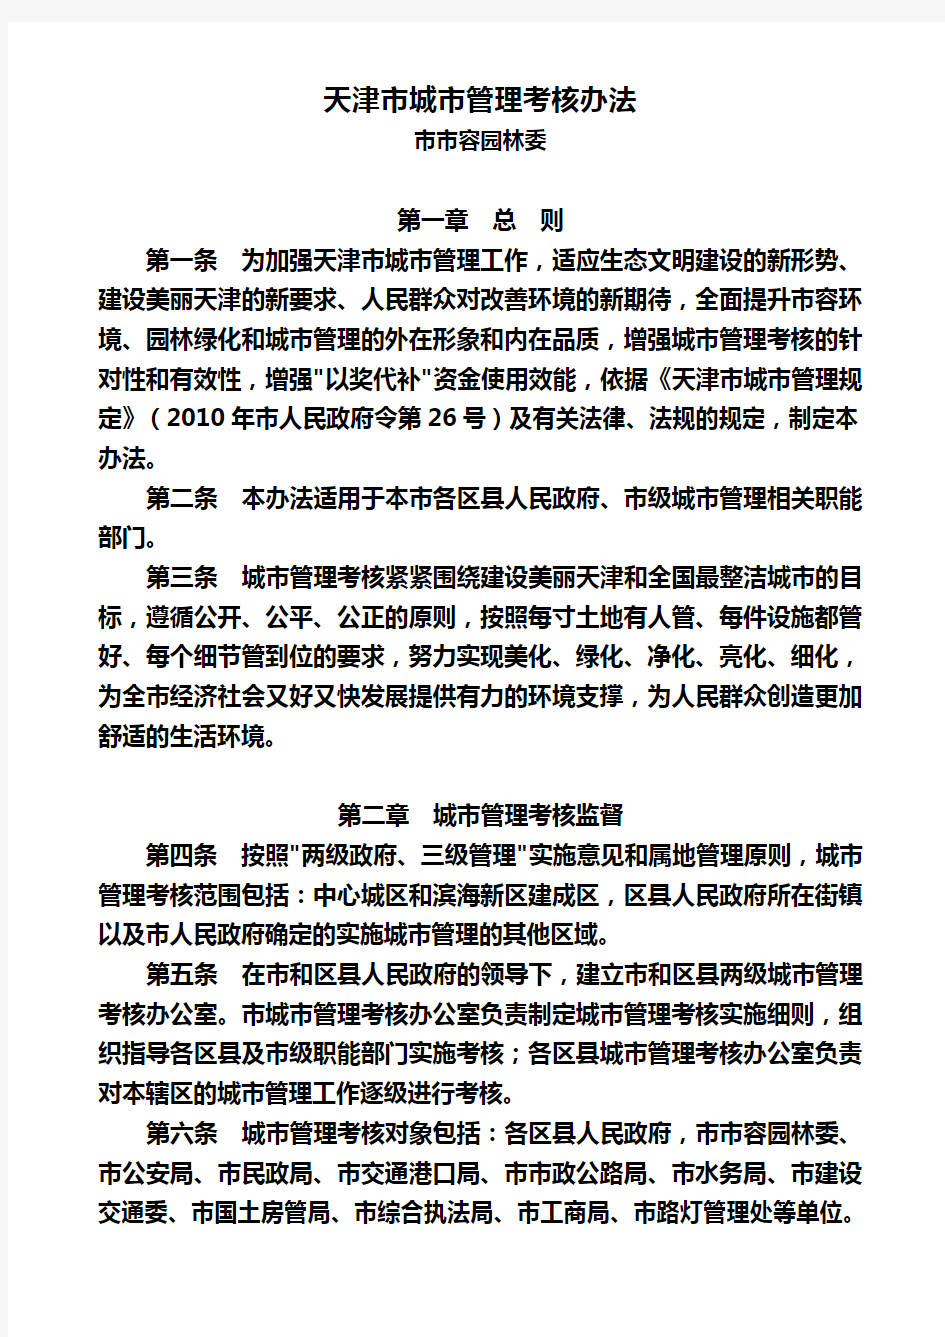 天津市城市管理考核办法